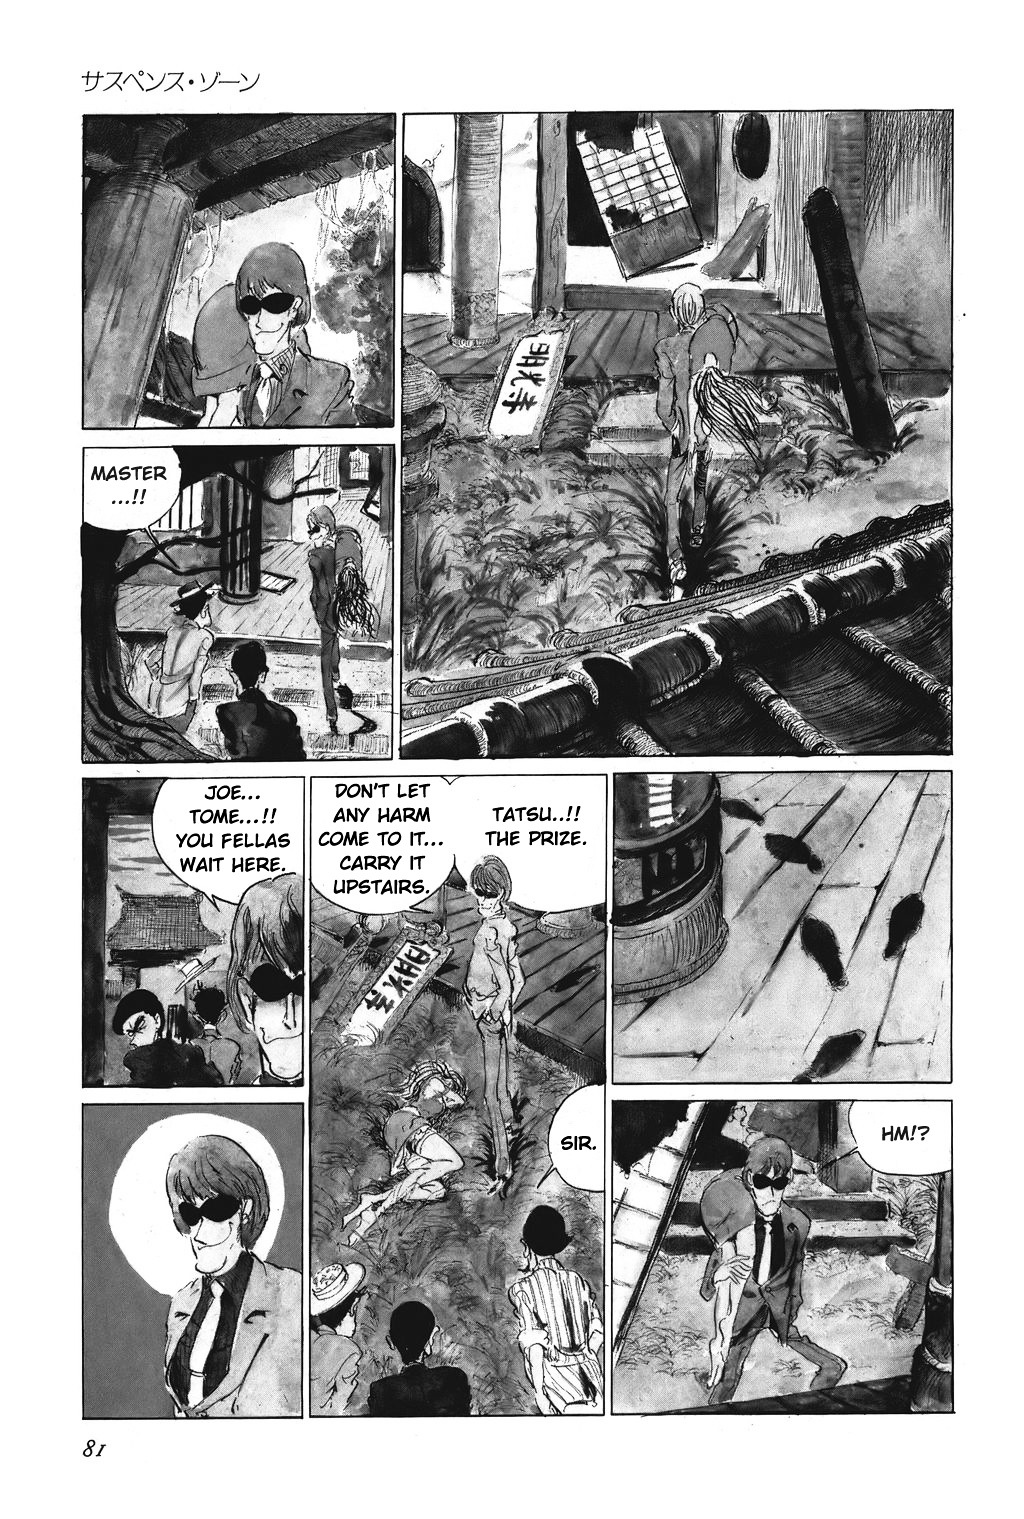 Lupin Sansei Vol.1 Chapter 5 : Suspense Scene - Picture 3